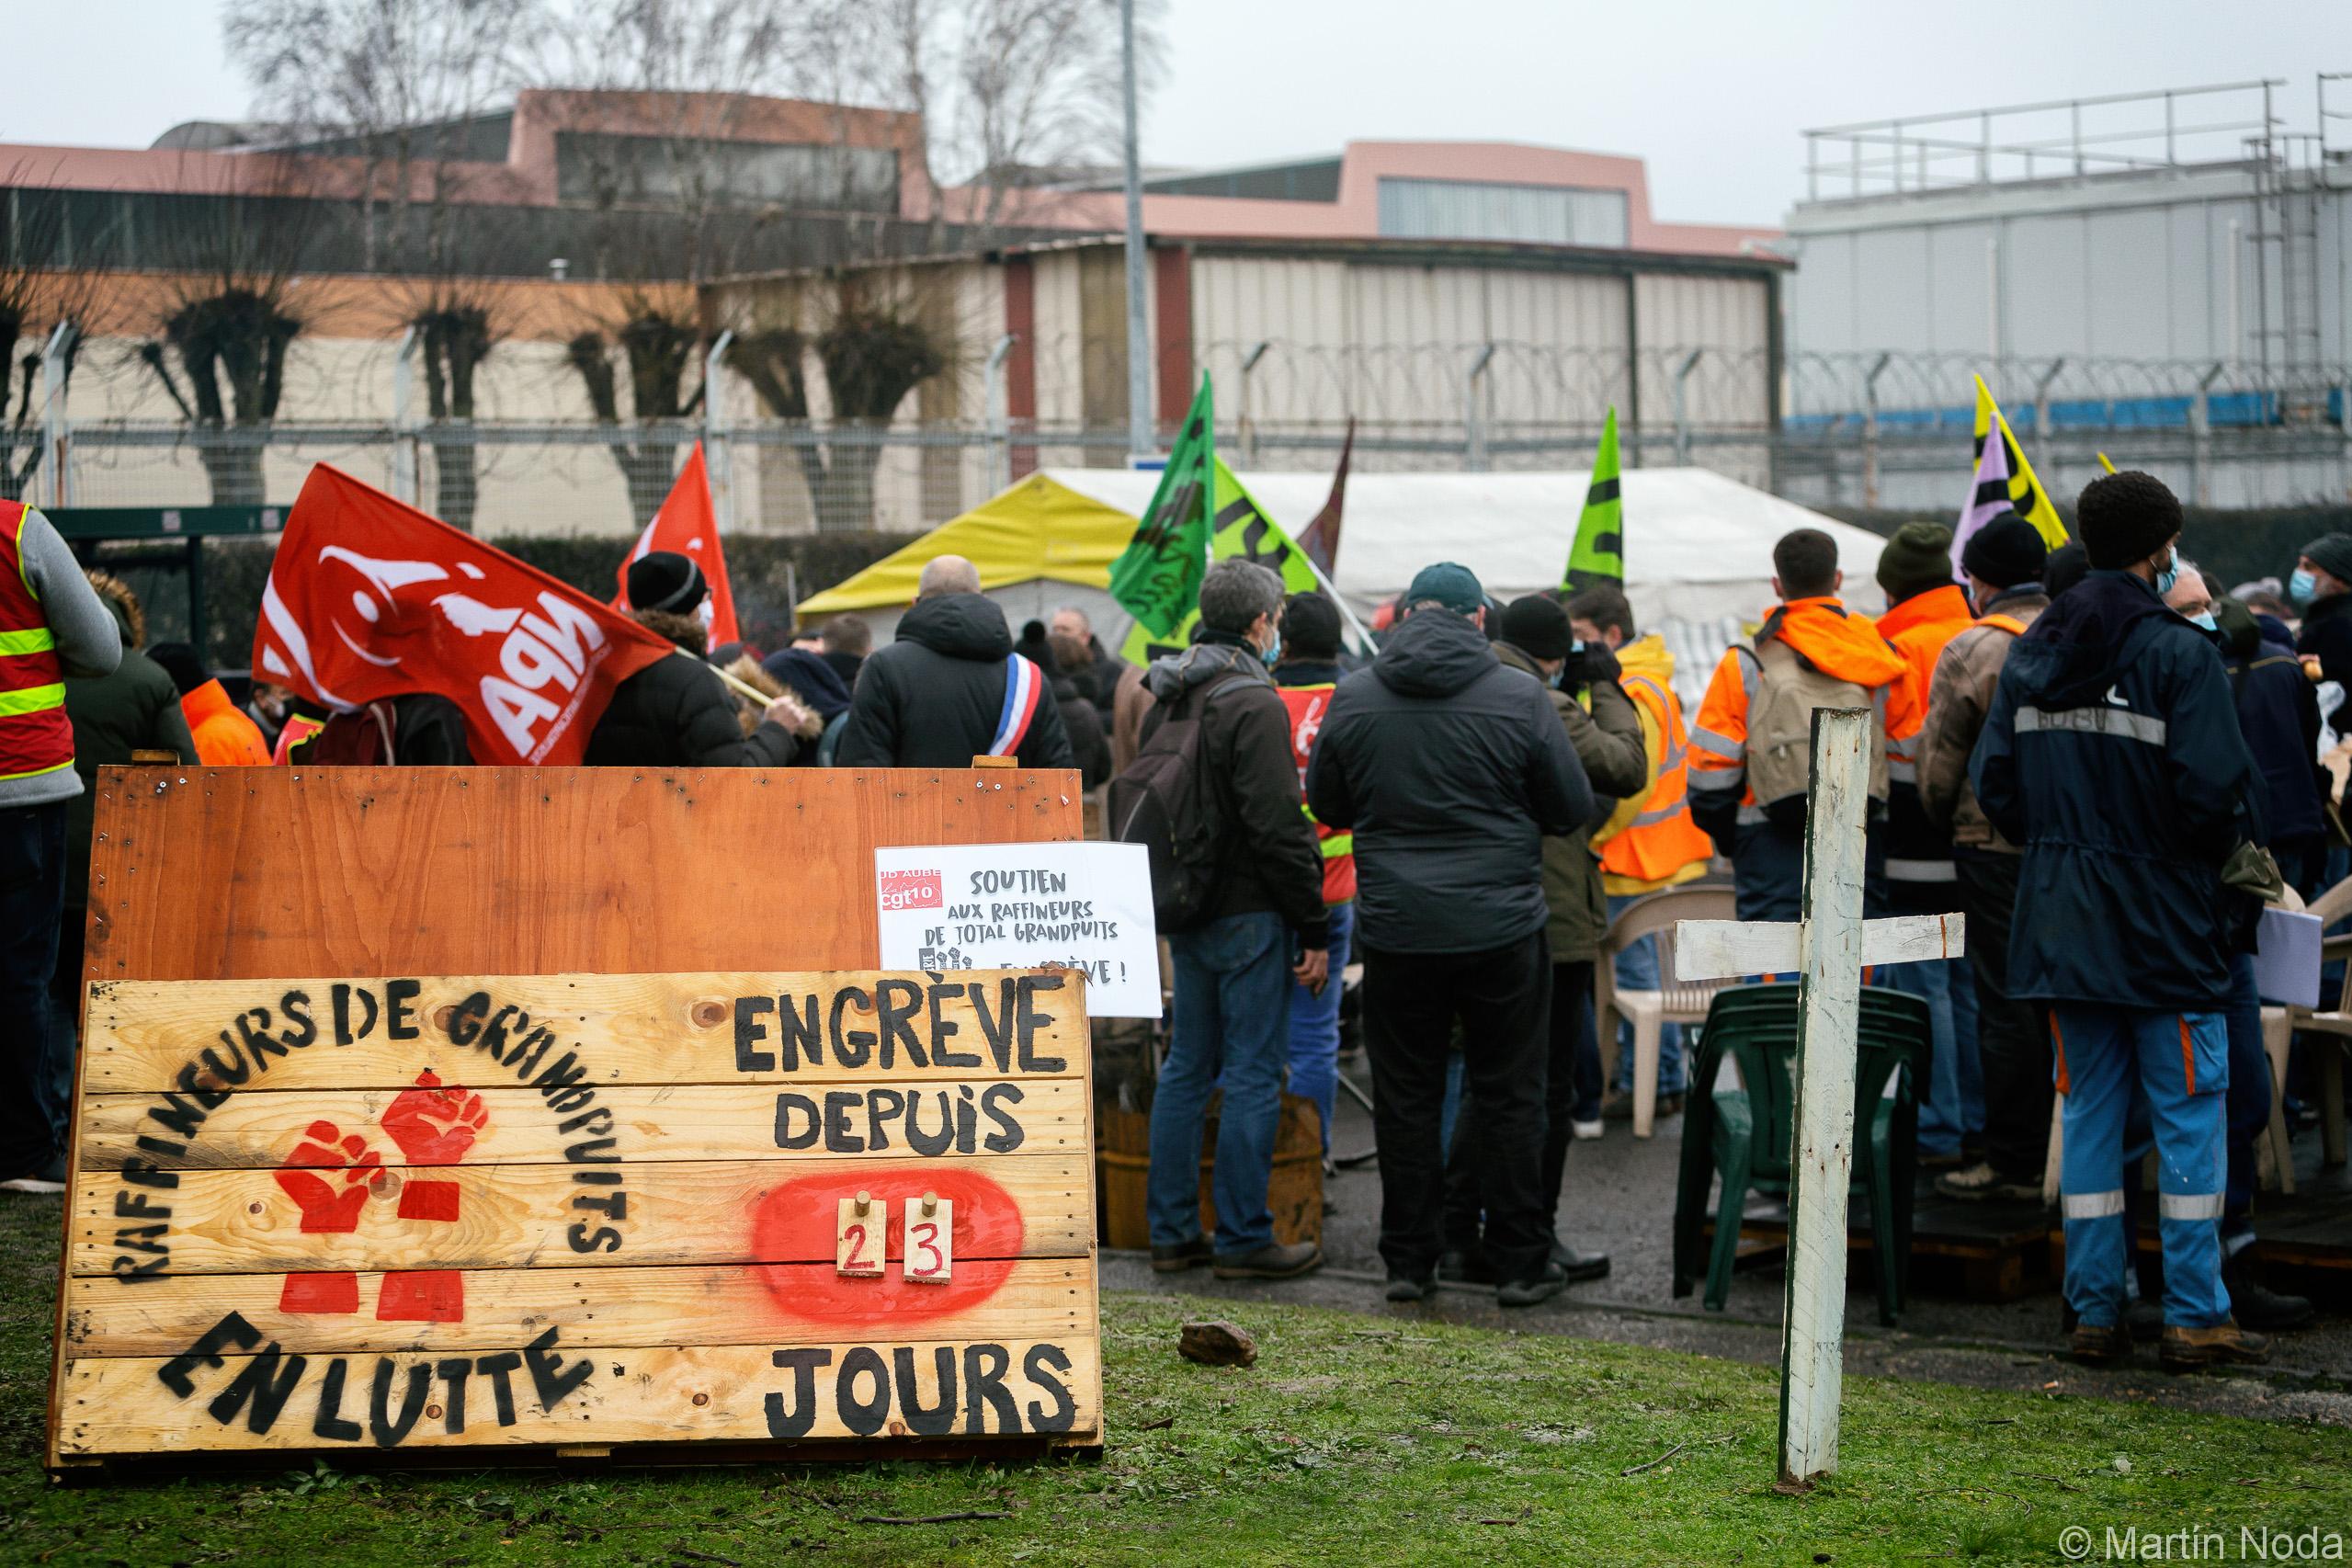 Panneau affichant le 23 jour de grève, rassemblement des raffineurs en grève contre la fermeture du site de Grandpuits, Grandpuits-Bailly-Carrois, 27 janvier 2021.